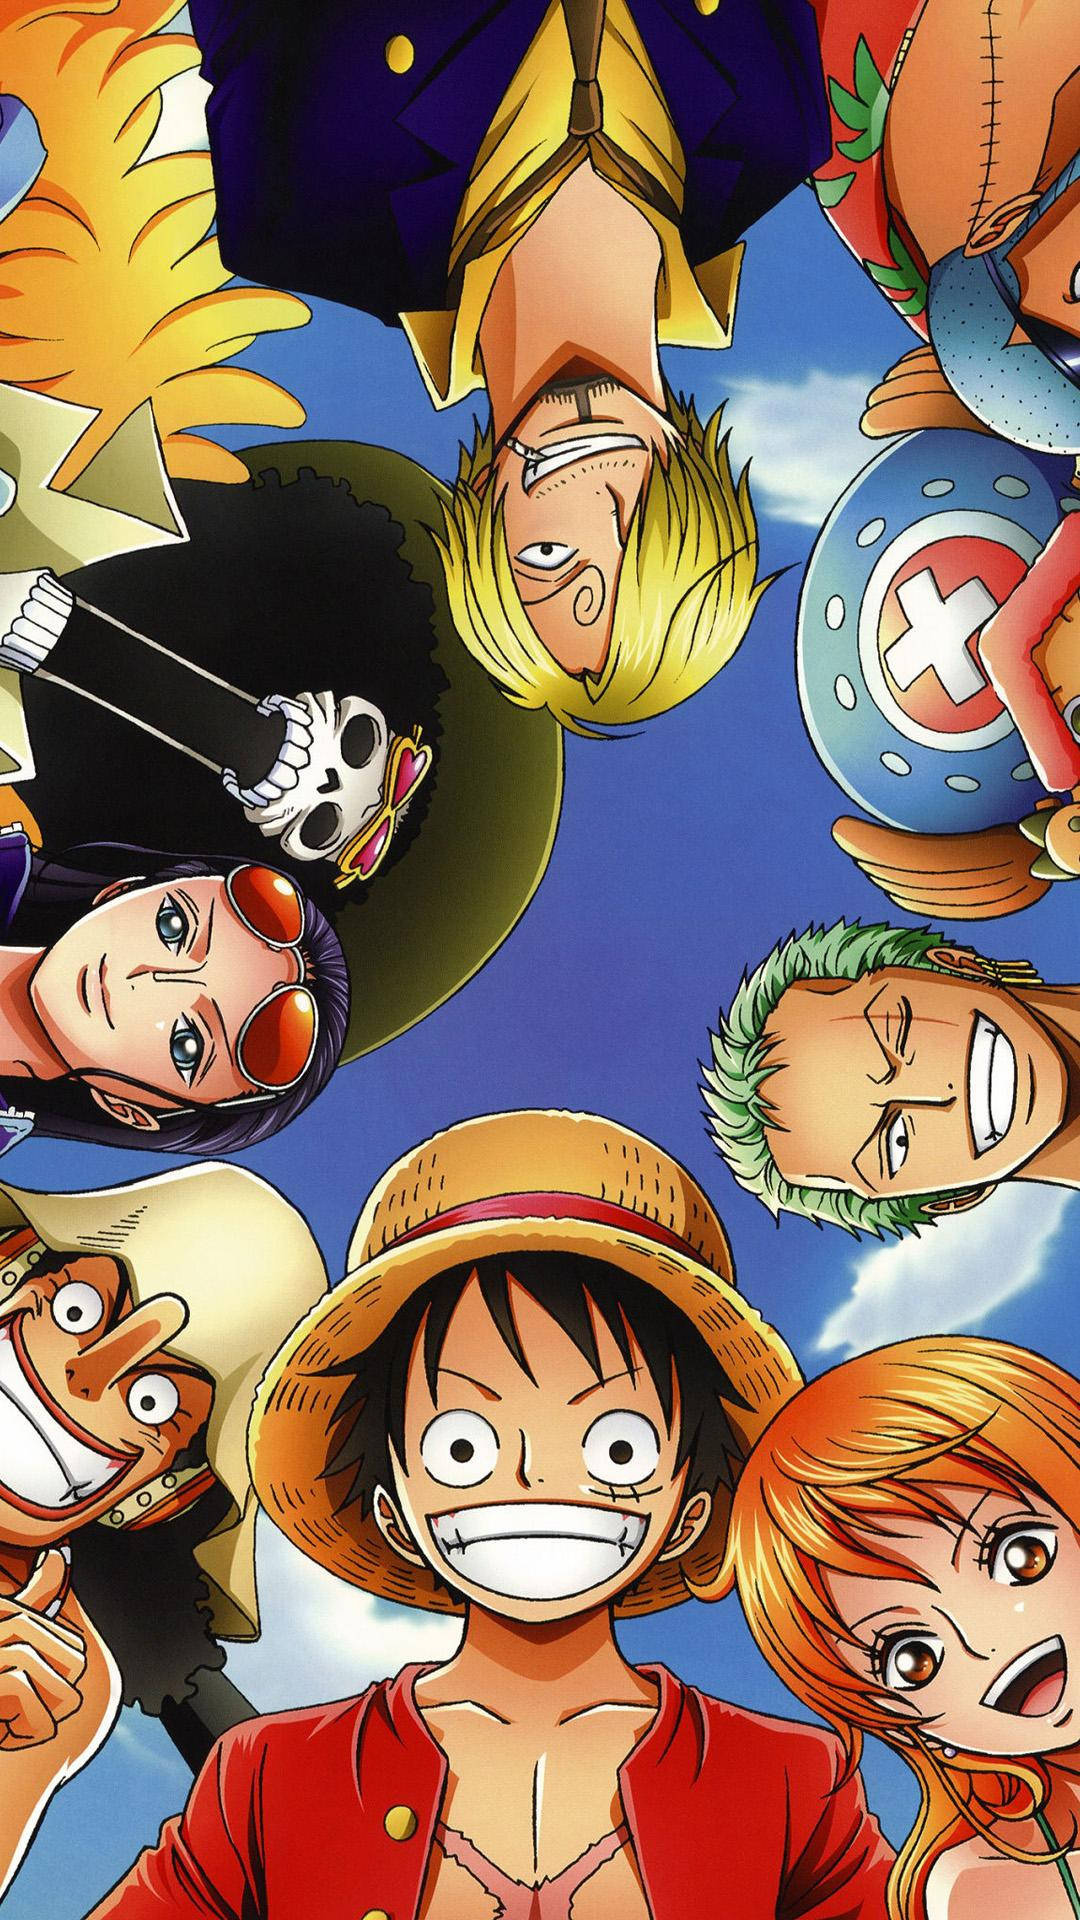 One Piece phone background (60 words) Bạn có phải là một fan của bộ manga One Piece không? Bạn muốn thay đổi hình nền điện thoại của mình với các hình ảnh độc đáo về Luffy, Sanji, Zoro, Nami và đồng đội khác trong bộ truyện này? Trên trang web này, bạn sẽ tìm thấy nhiều lựa chọn hình nền độc đáo với những tình huống hấp dẫn, đầy màu sắc và tinh tế. Hãy để cho hình nền One Piece thể hiện cuộc đời của bạn nào!